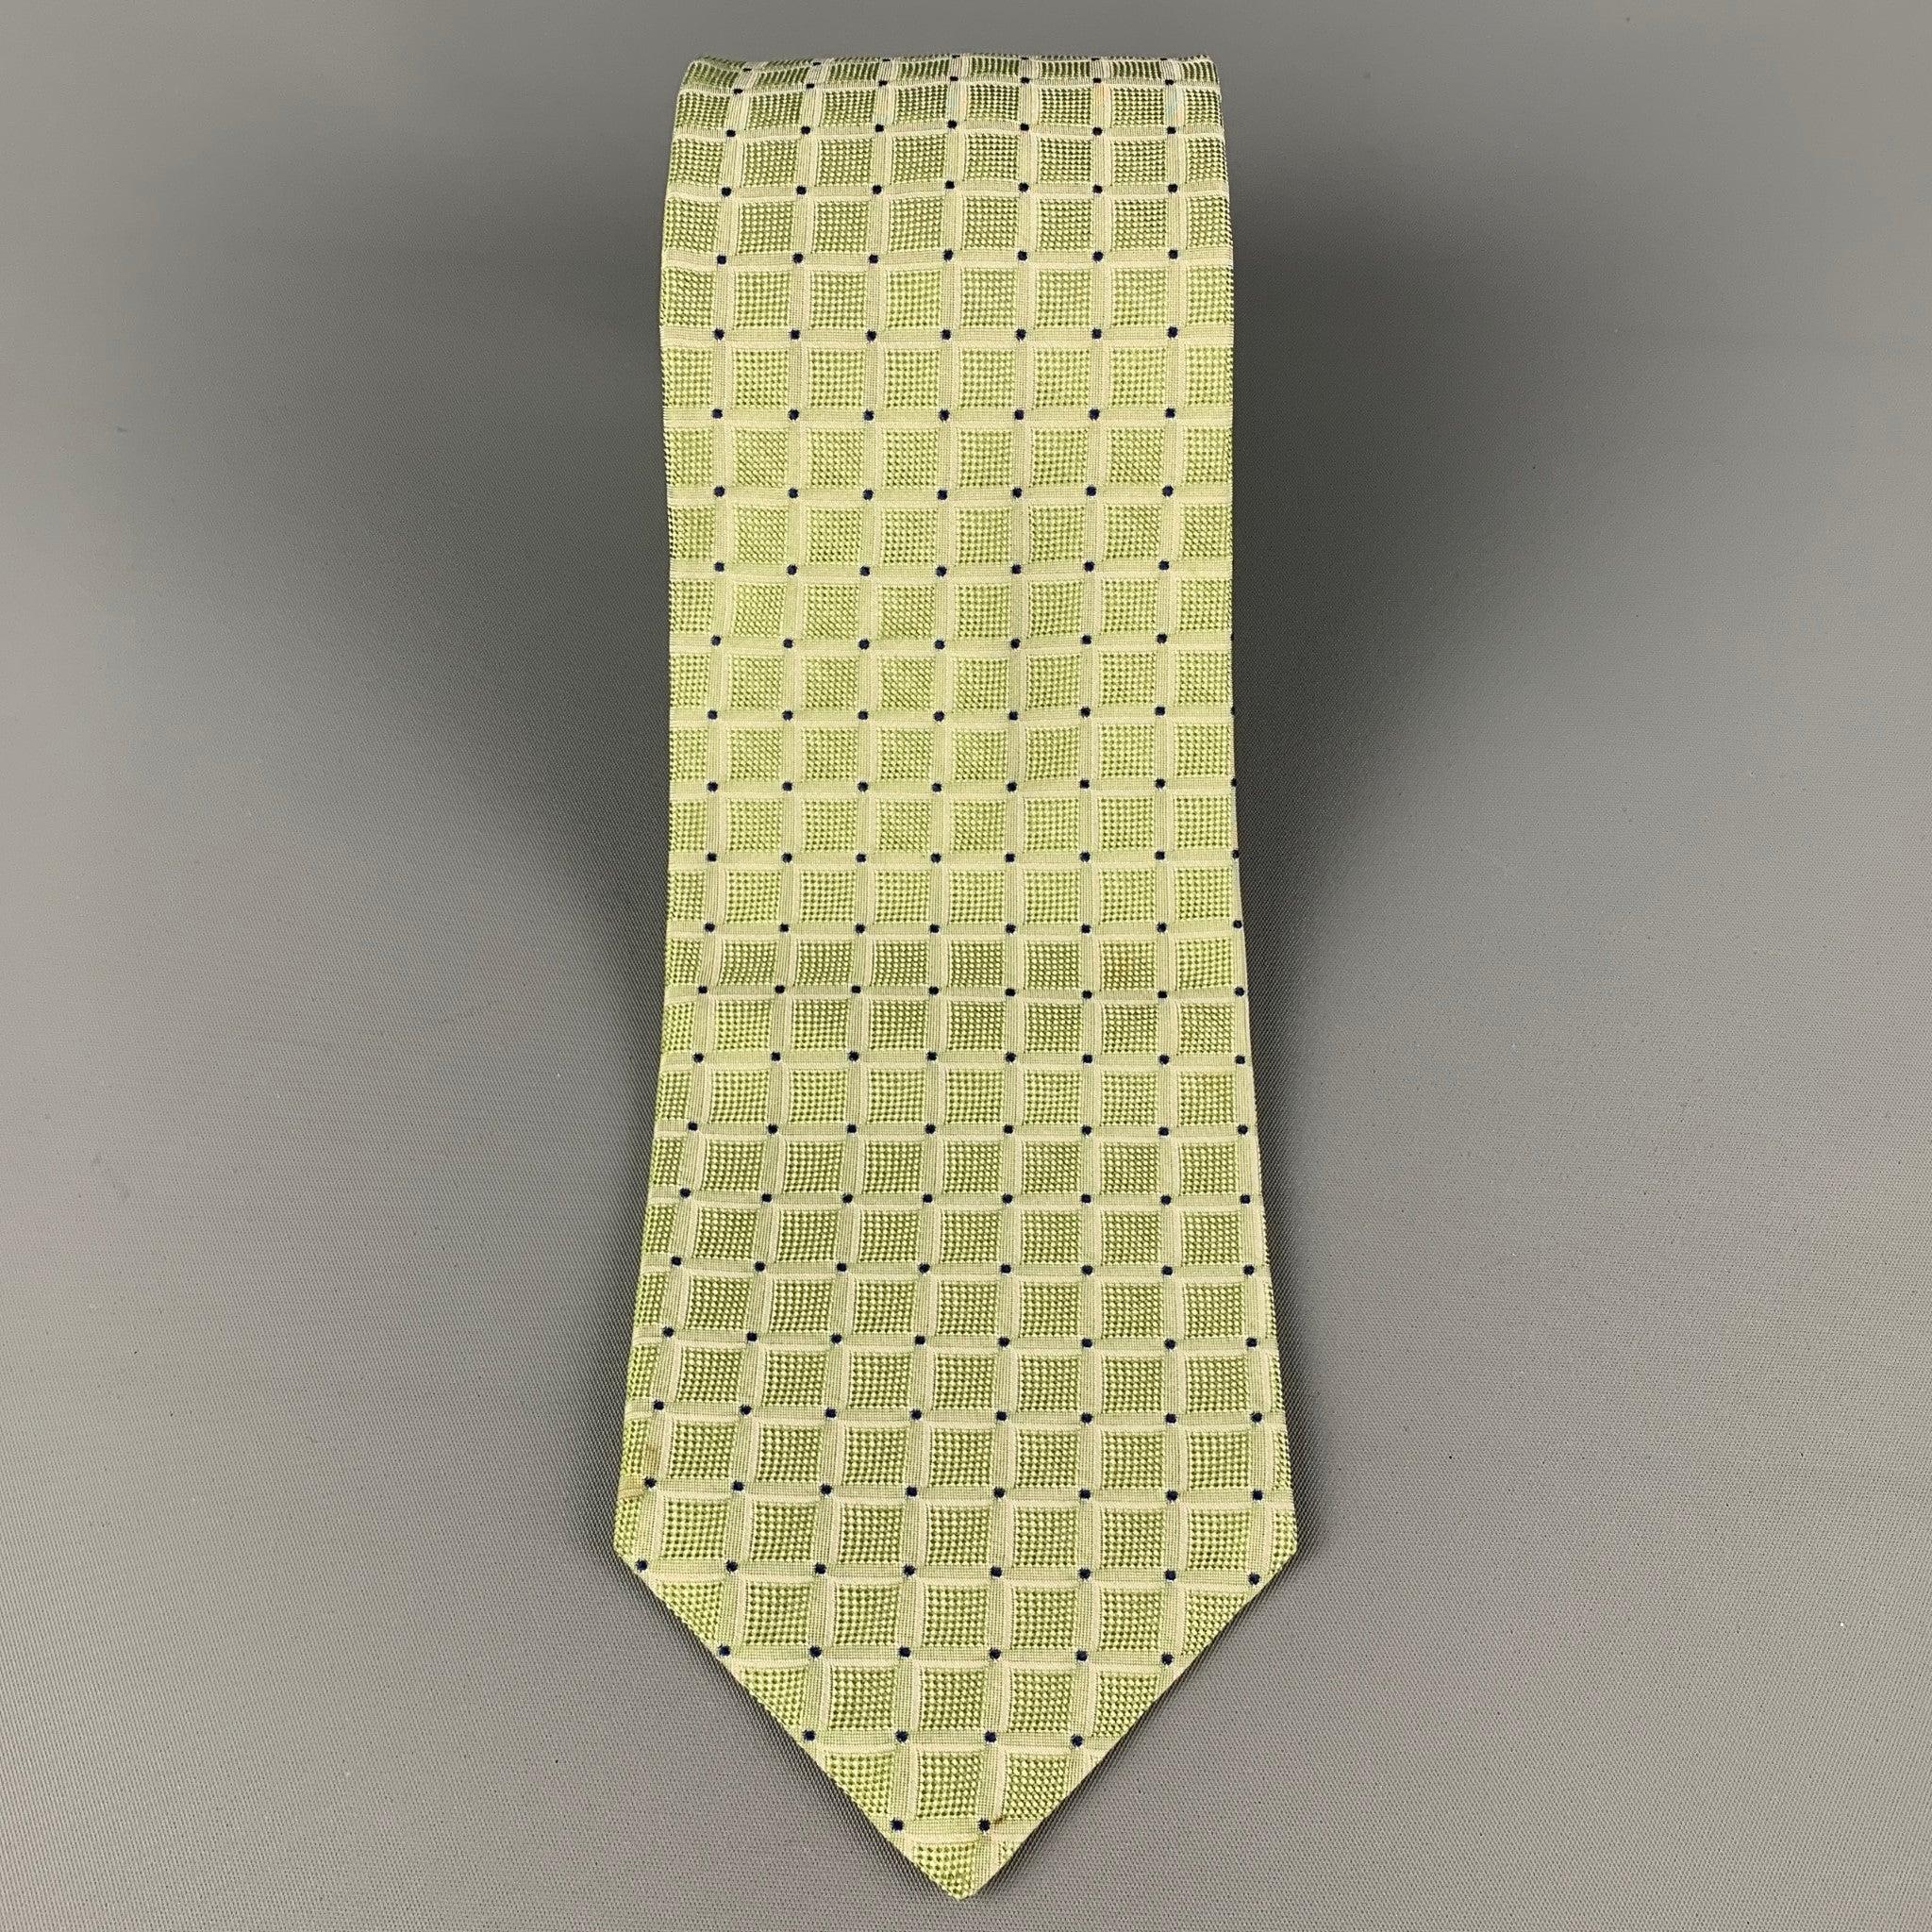 La cravate de KITON se compose d'une soie de couleur sauge et d'un imprimé carré. Fabriquées en Italie. Très bon état d'usage.largeur : 3.75 pouces  Longueur : 58 pouces 

  
  
 
Référence Sui Generis : 120389
Catégorie : Cravate
Plus de détails
  